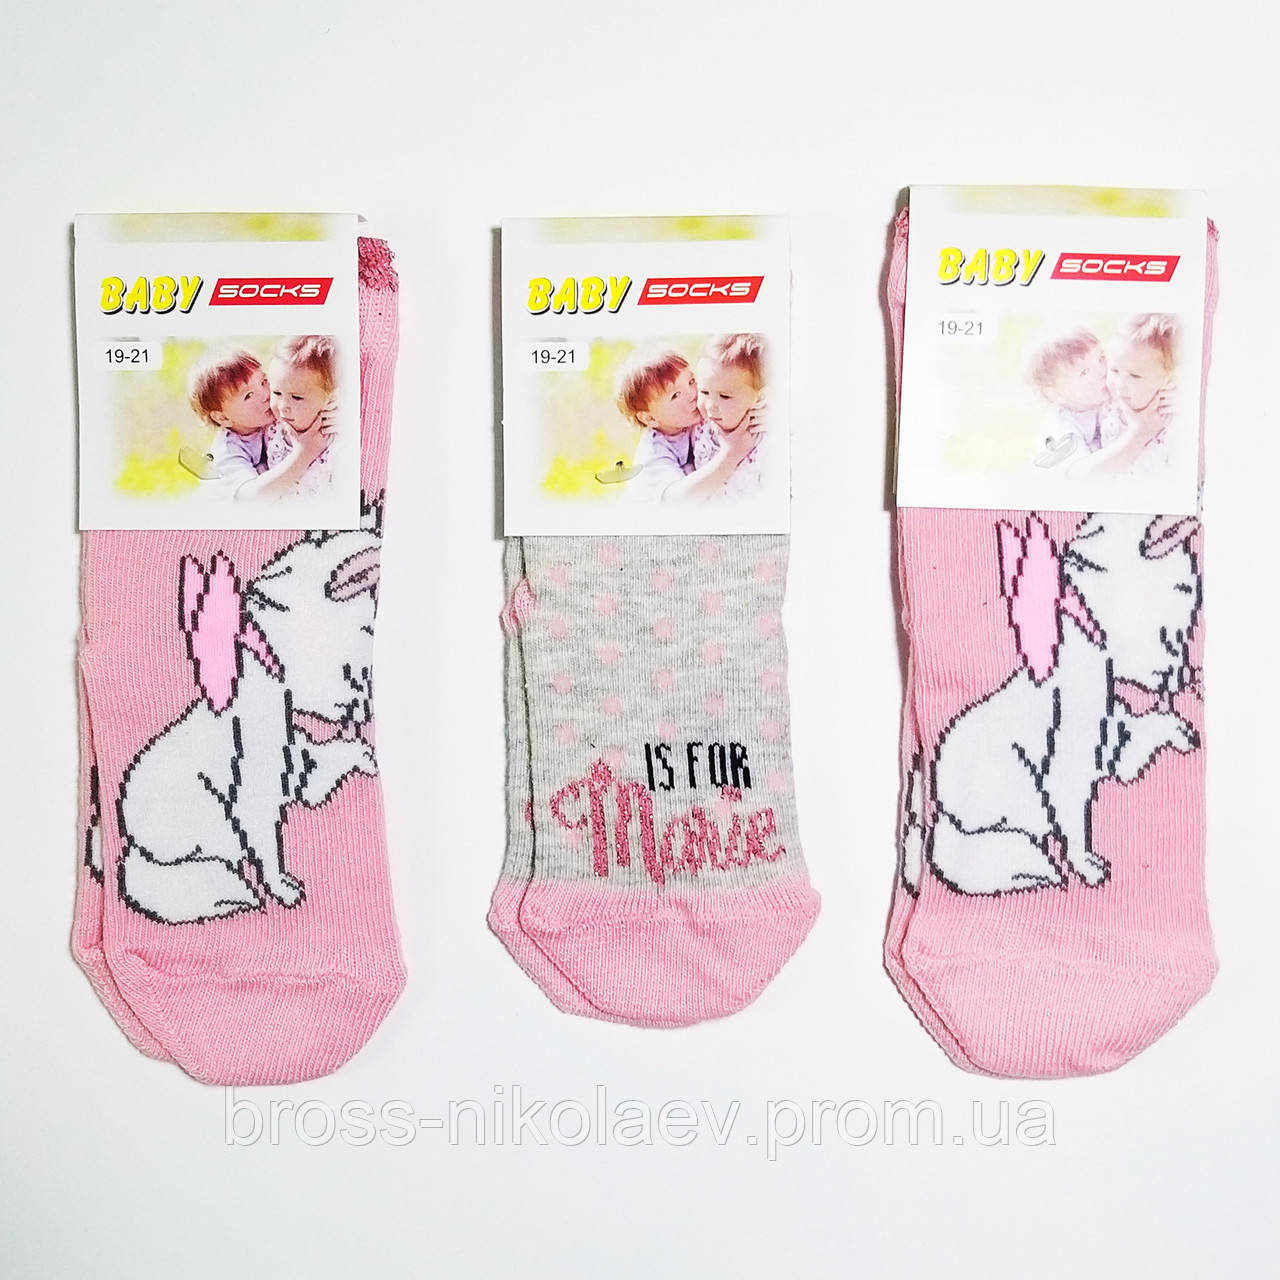 Високі дитячі шкарпетки з малюнками для малюка демі шкарпетки для дівчинки ТМ BabySocks (BROSS)